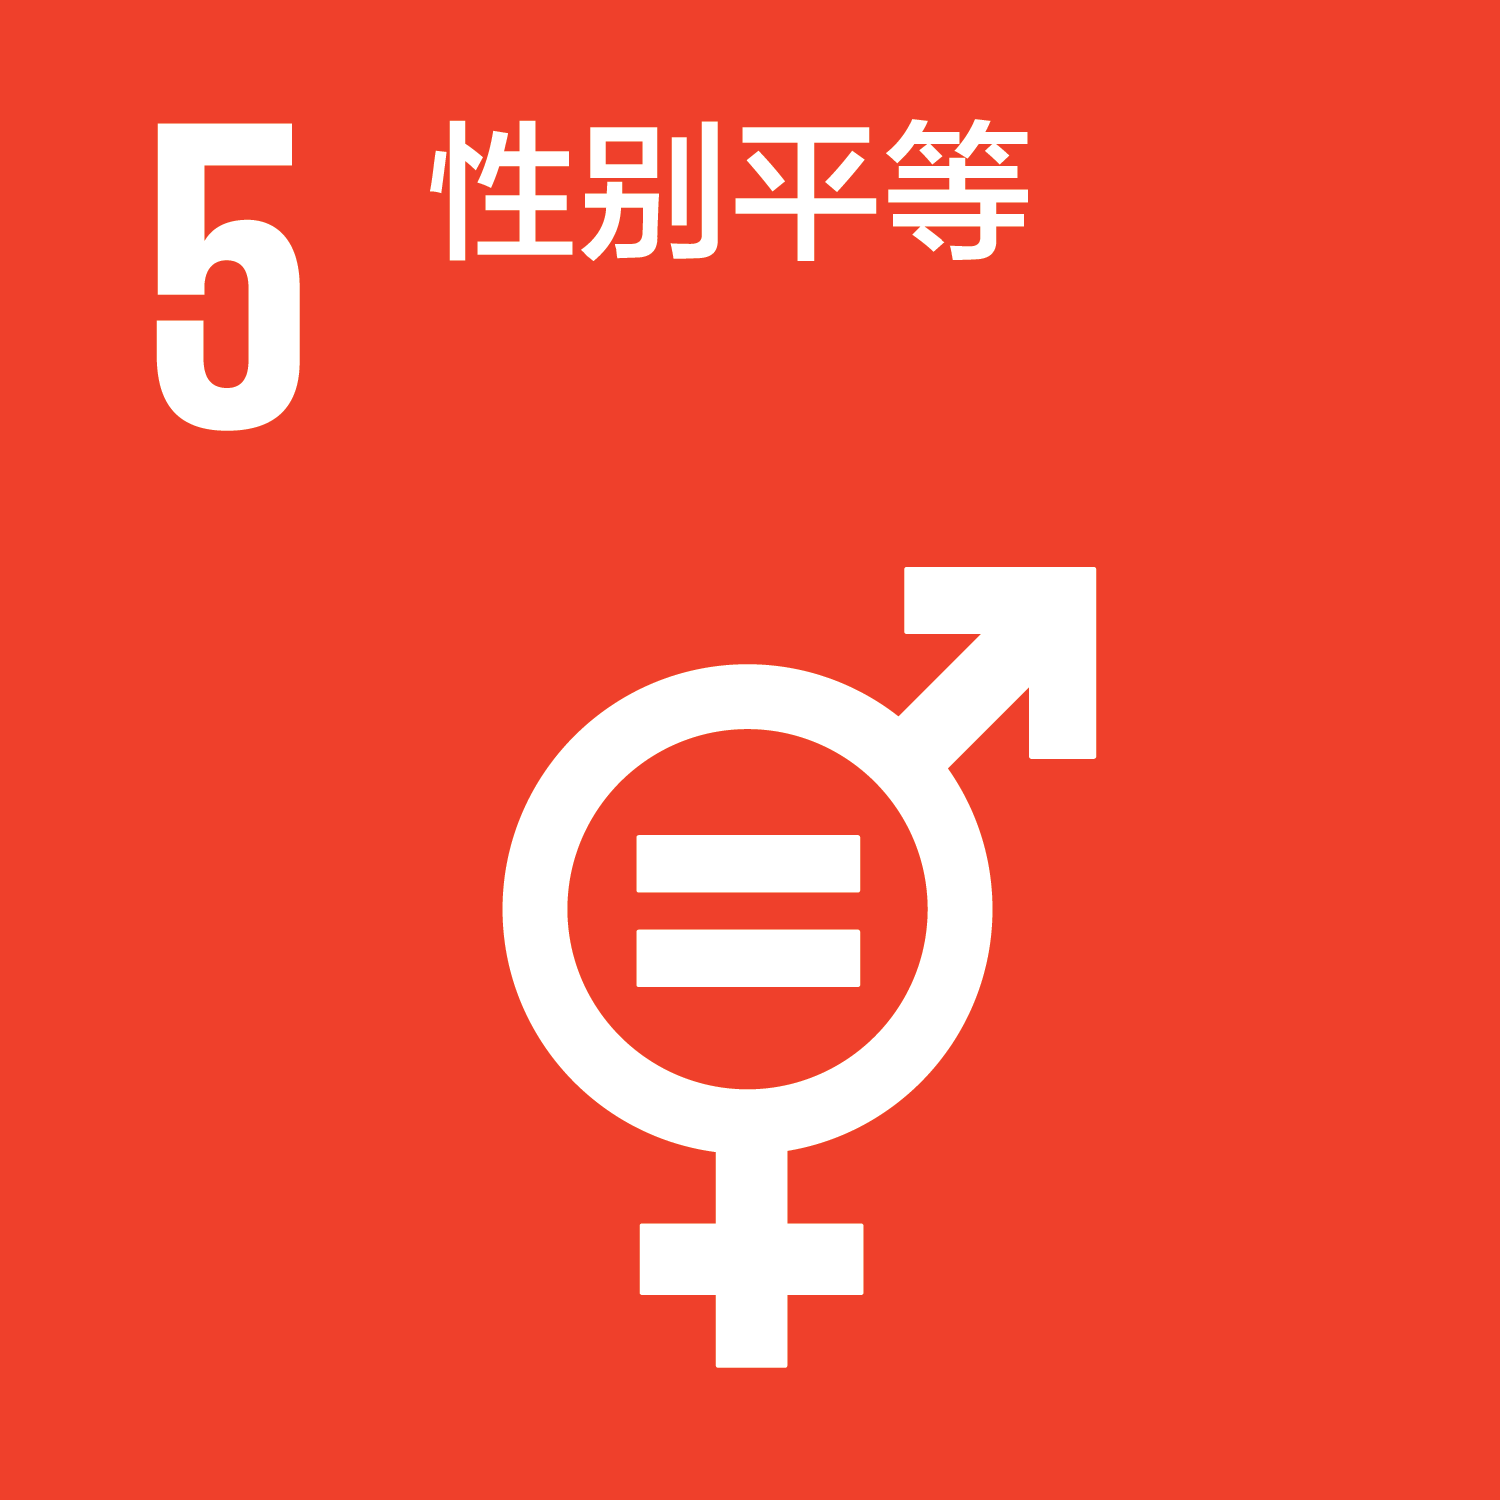 可持续发展目标-5性别平等